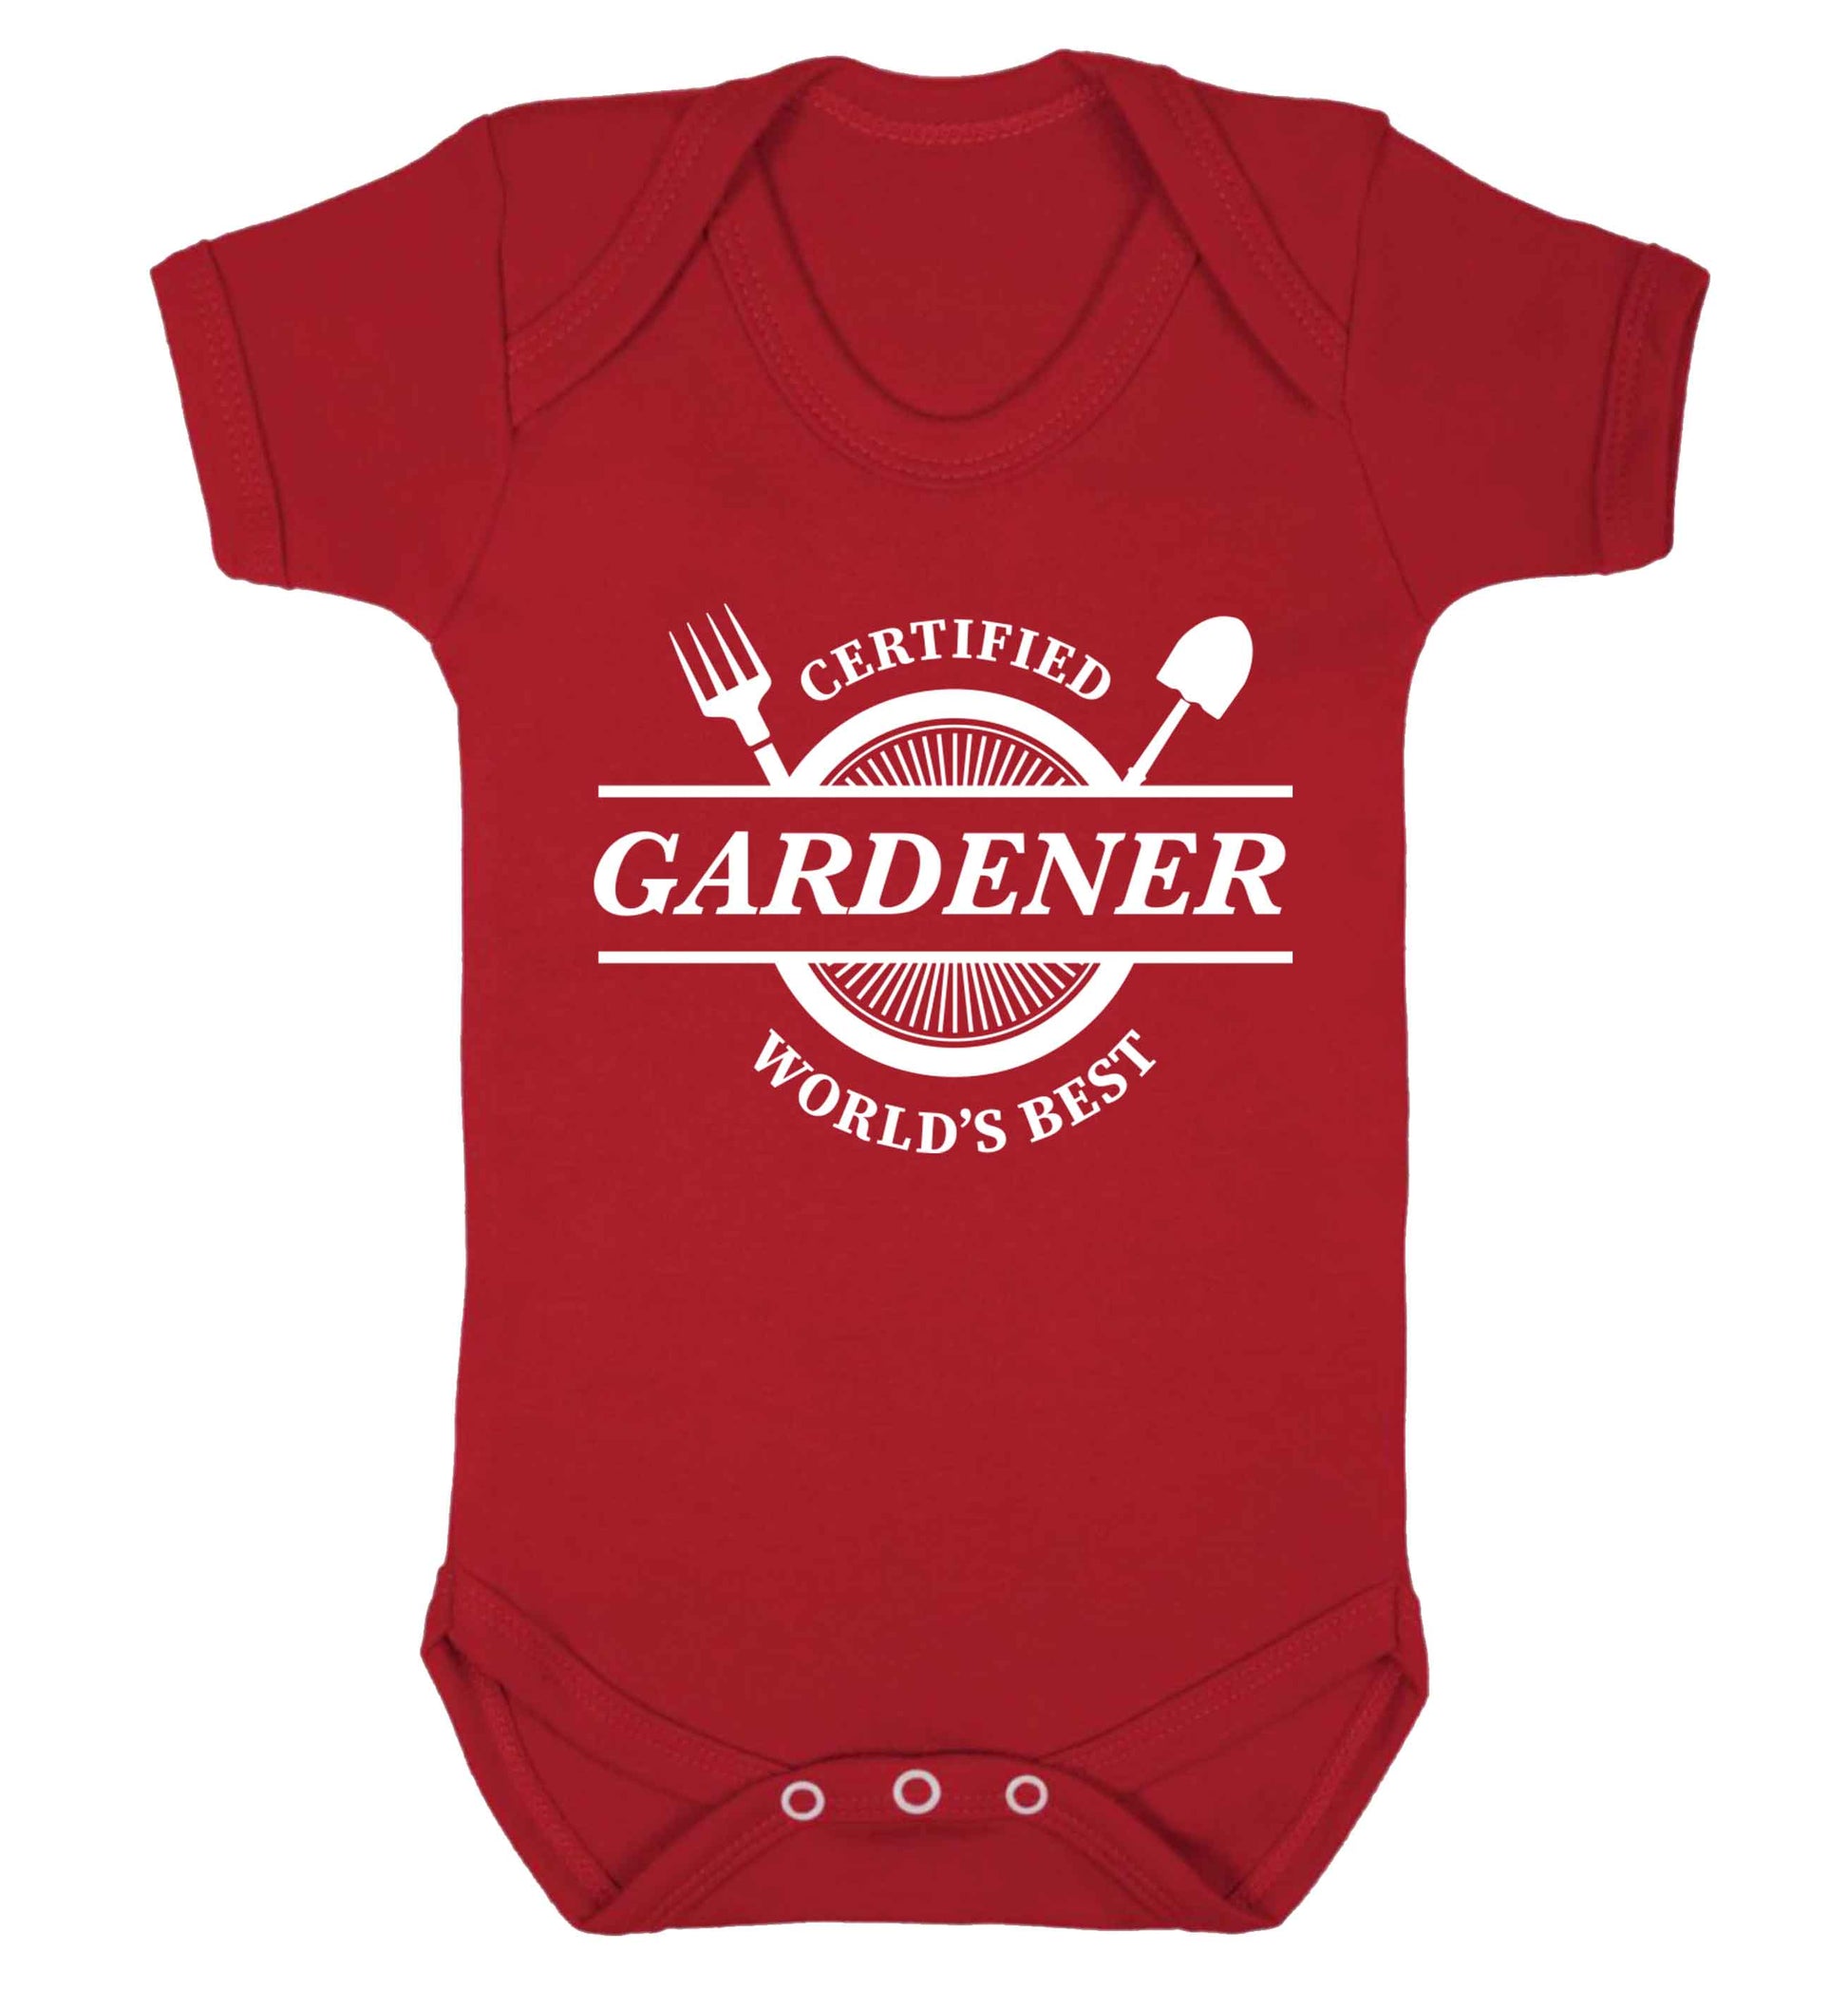 Certified gardener worlds best Baby Vest red 18-24 months